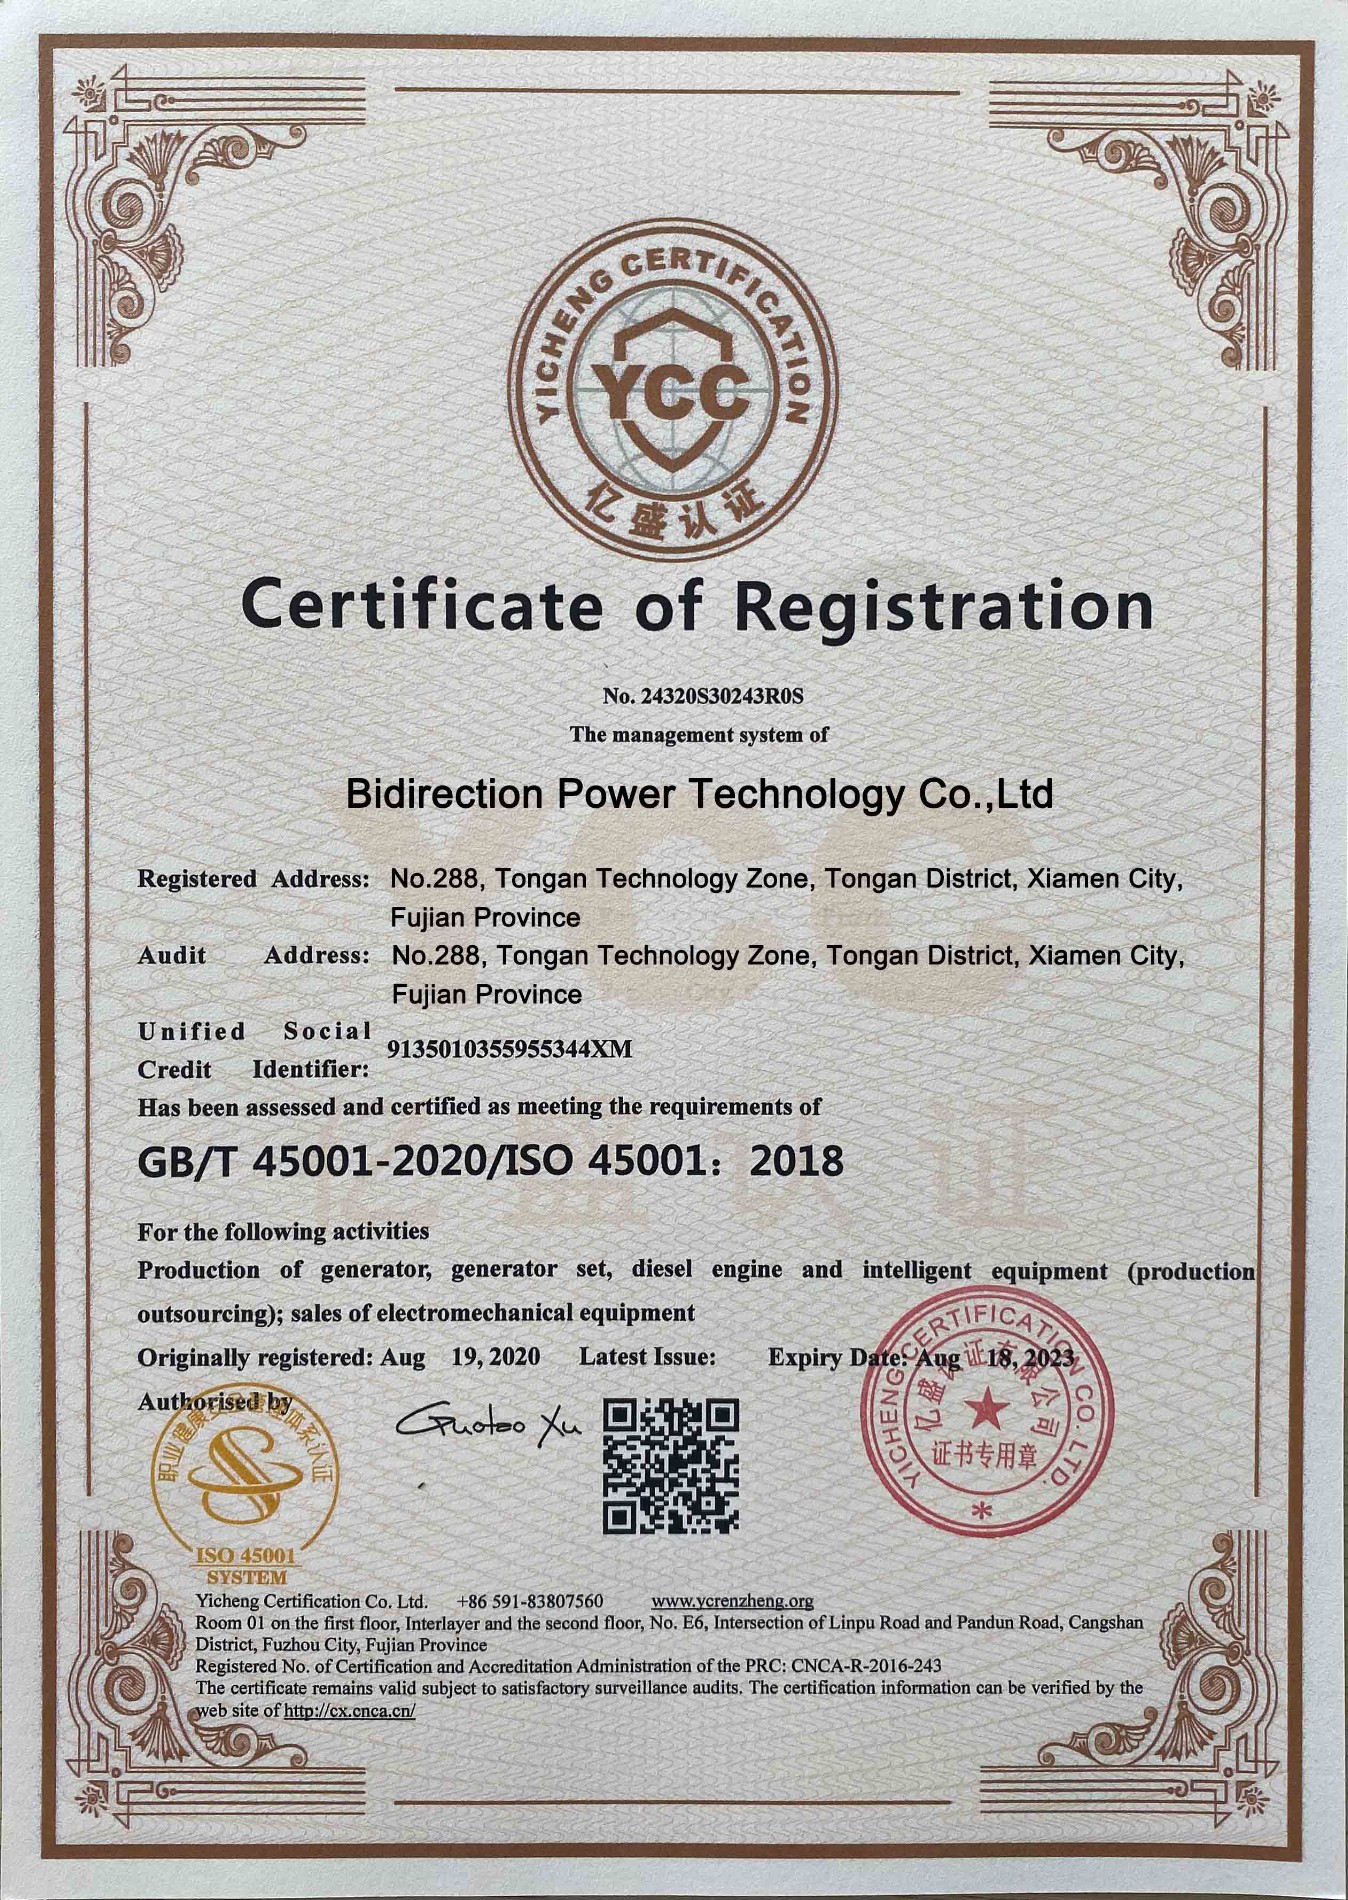 Tehnologija dvosmjernog napajanja ovlaštena potvrdom o registraciji GB / T45001-2020 / ISO 45001: 2018